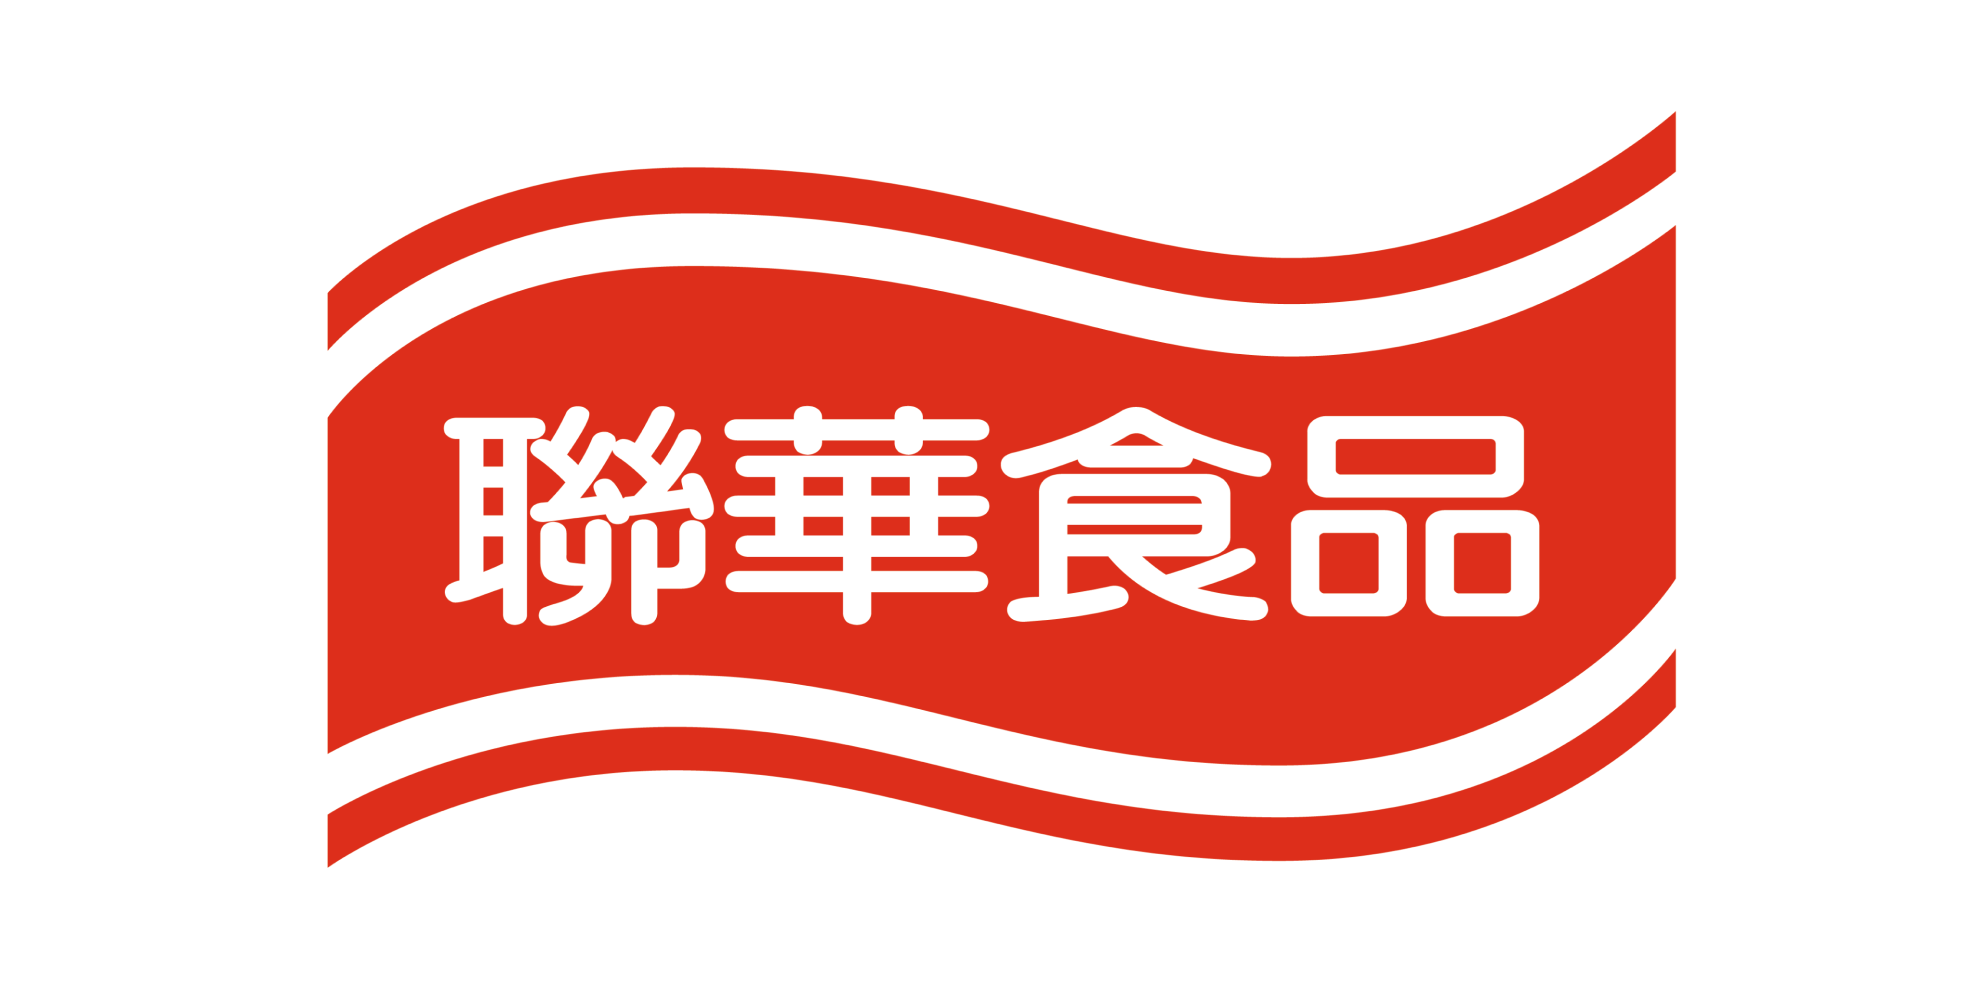 聯華 01 | 聯華食品企業識別形象更新專案 | Labsology 法博思品牌顧問公司